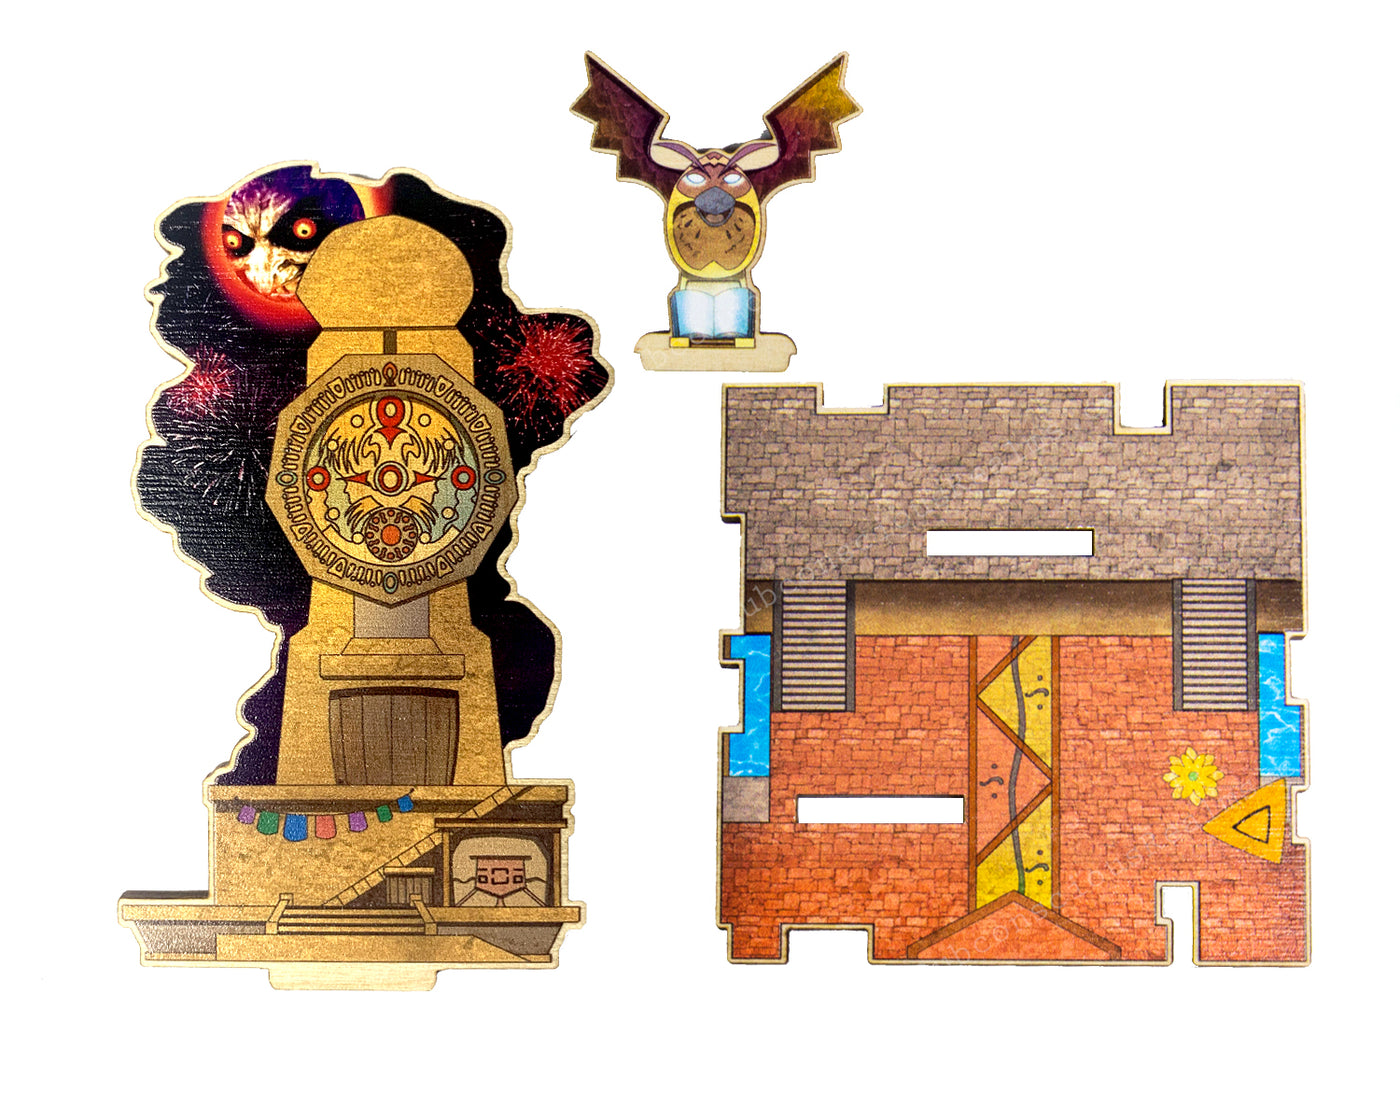 Legend of Zelda - Majora's Mask - Wall Clock – Esclair Studios